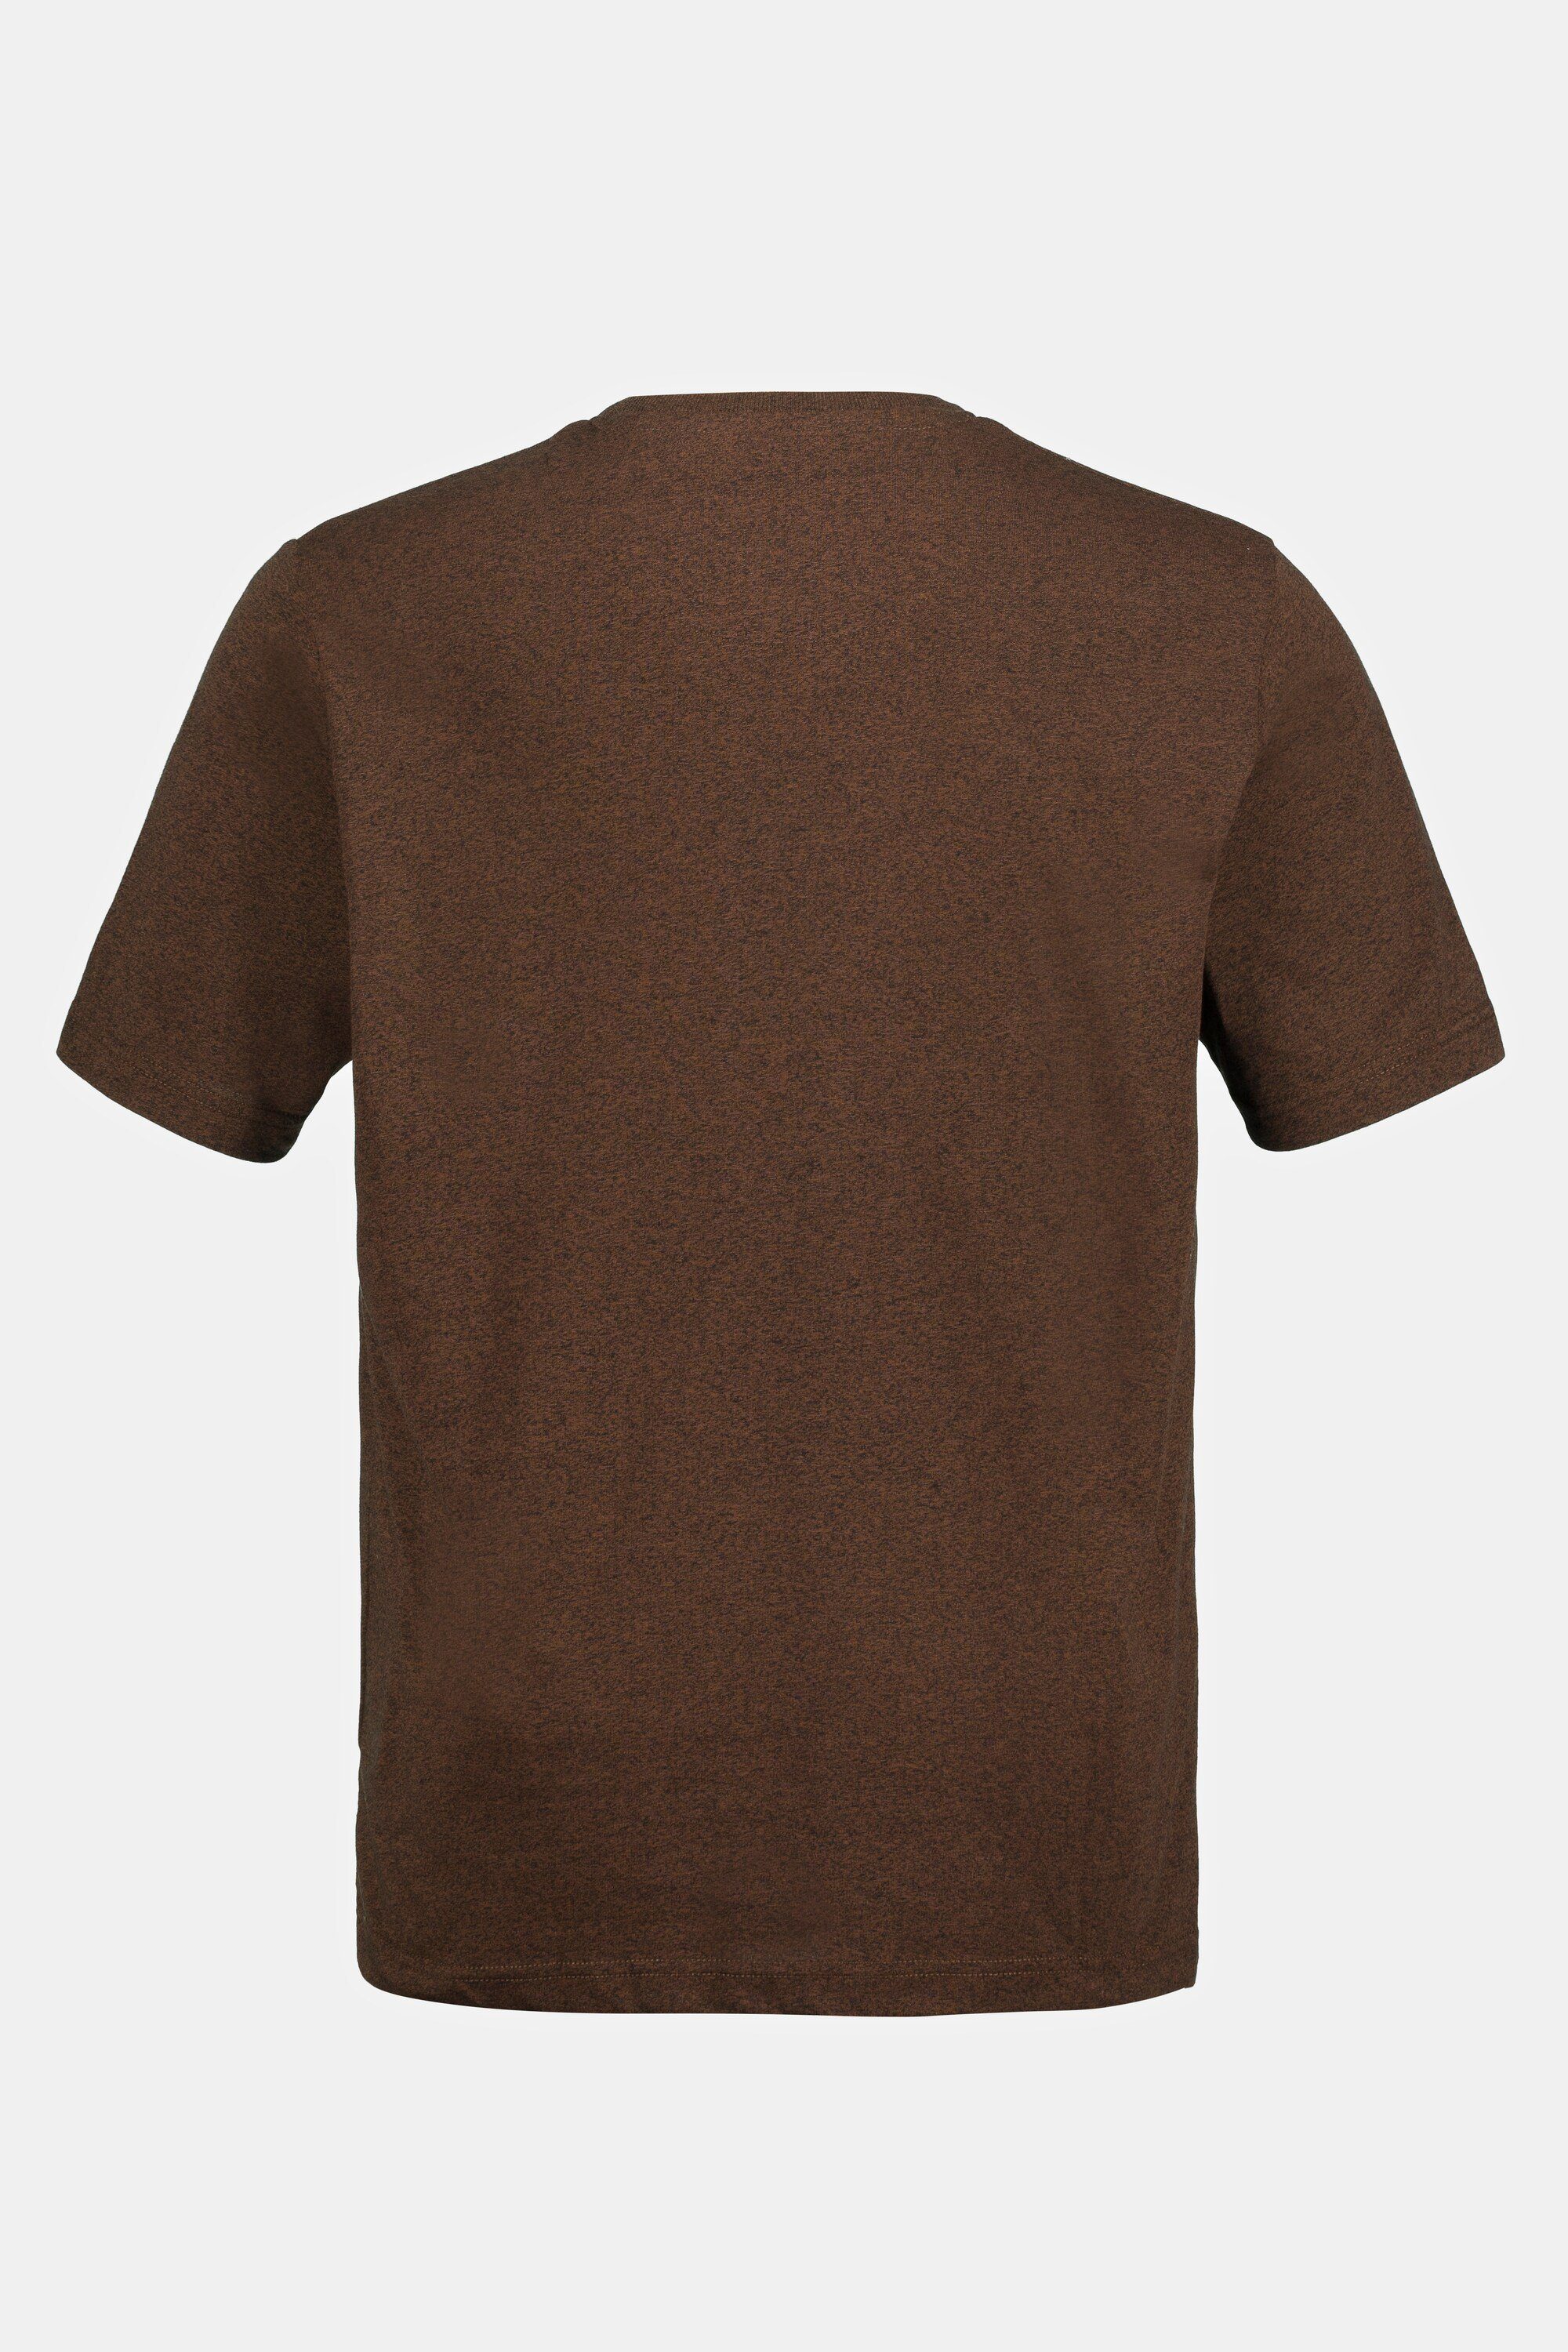 Herren Shirts JP1880 Rundhalsshirt T-Shirt Print Halbarm bis 8 XL